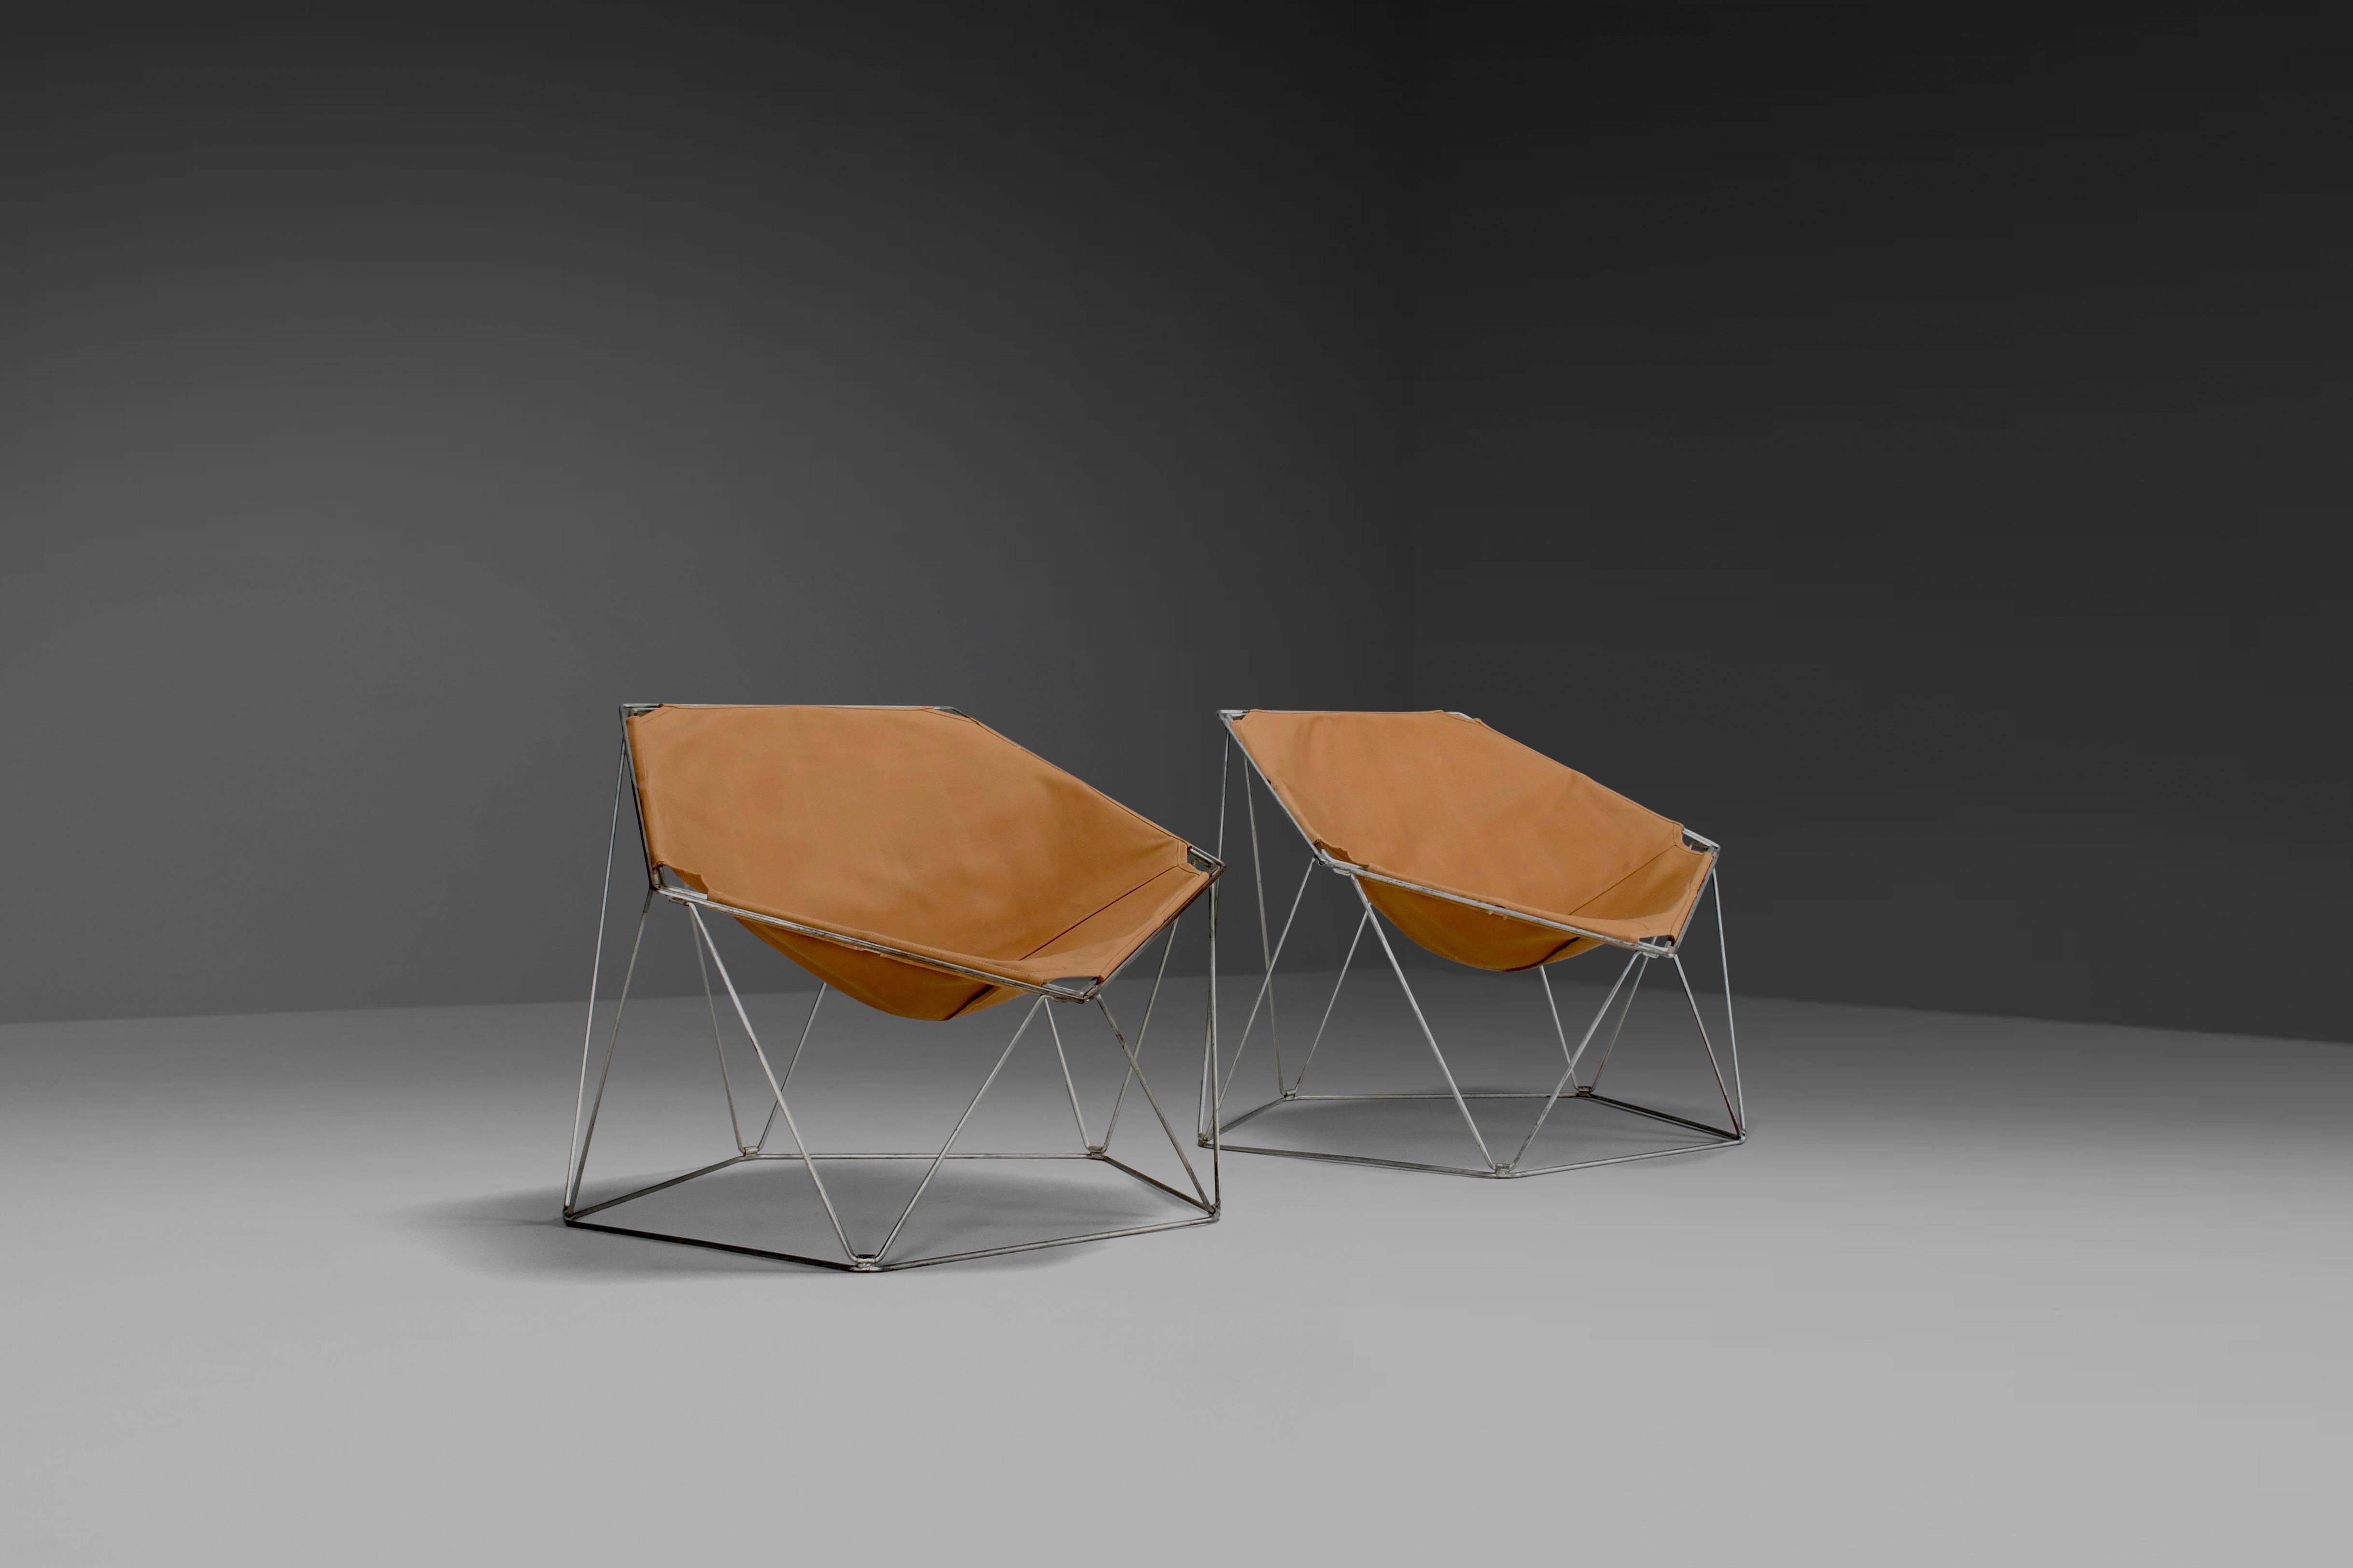 Conjunto de primeras sillas Penta en muy buen estado.

Diseñado por Jean-Paul Barray y Kim Moltzer. 

Fabricado por Bofinger en la década de 1960.

Las sillas tienen un armazón de alambre metálico de color cinc en forma de cinco esquinas que se